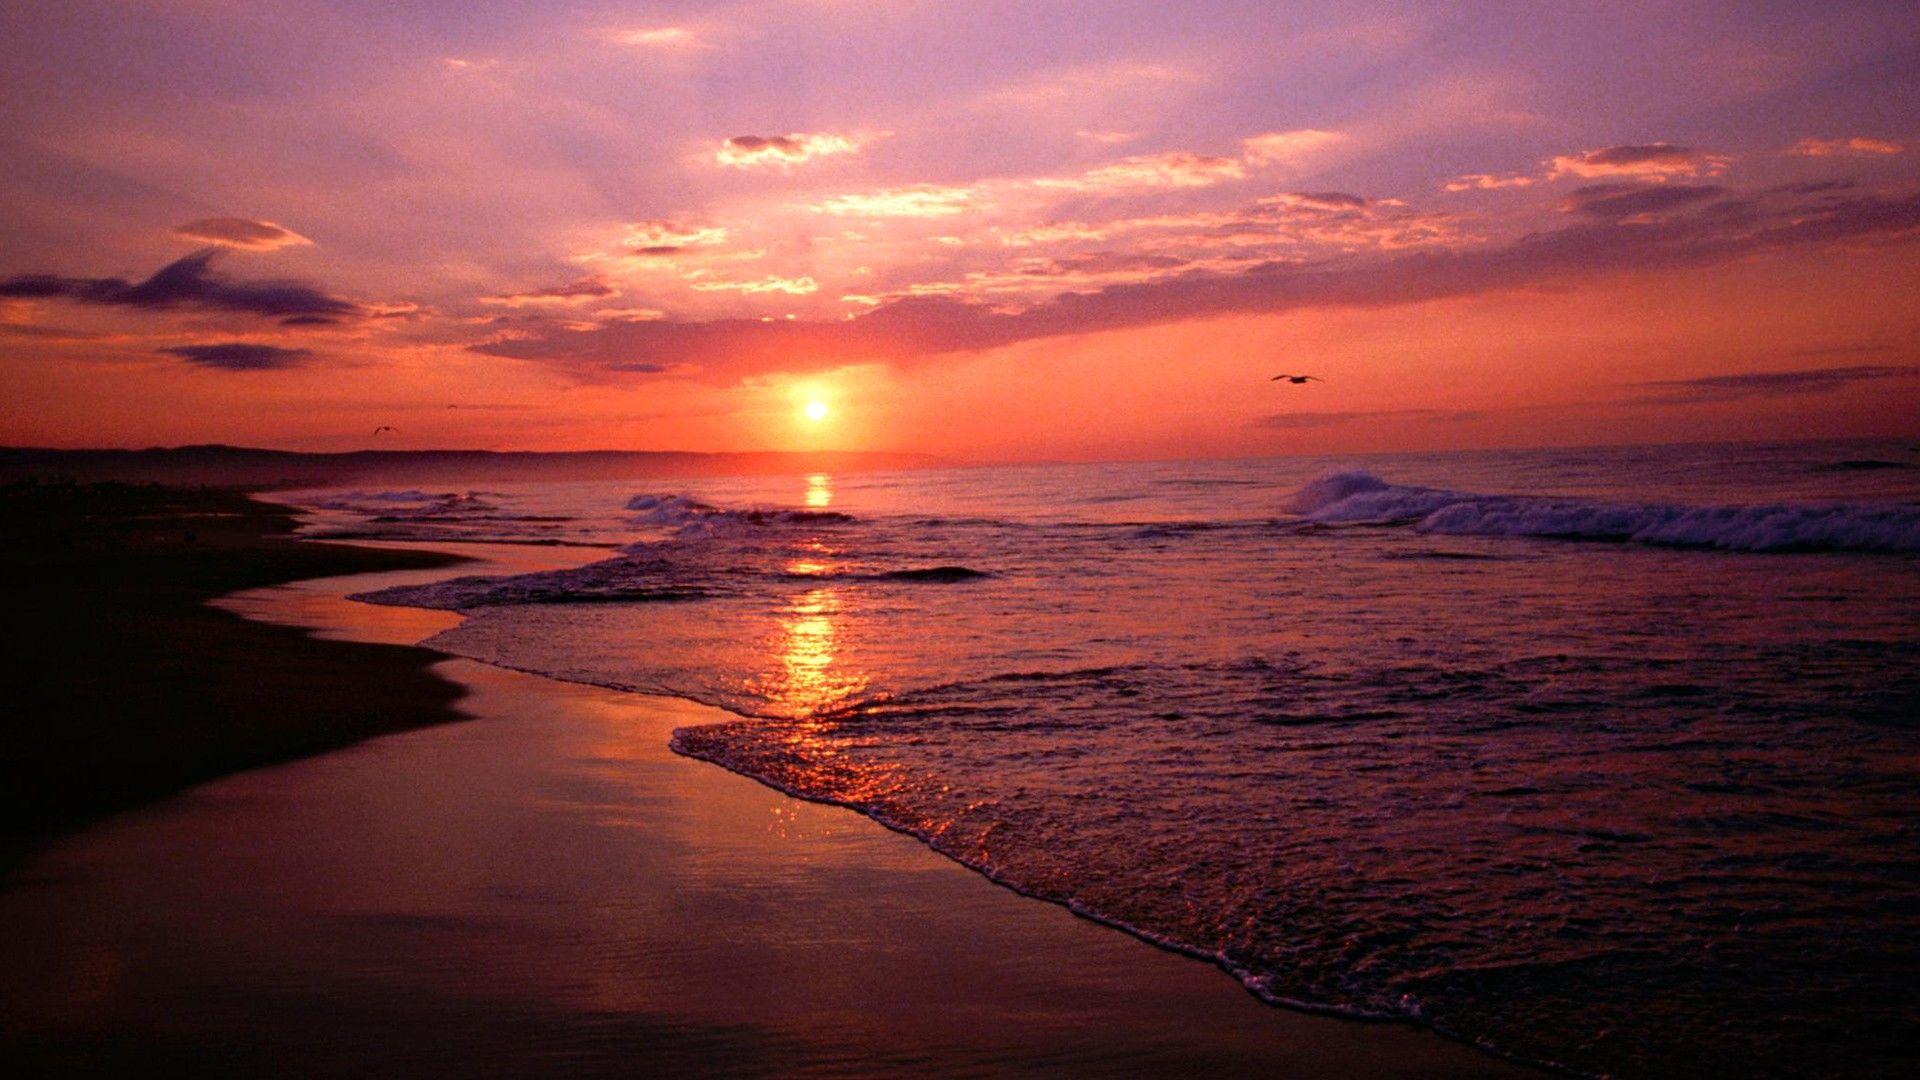 The Beach : sunset beach